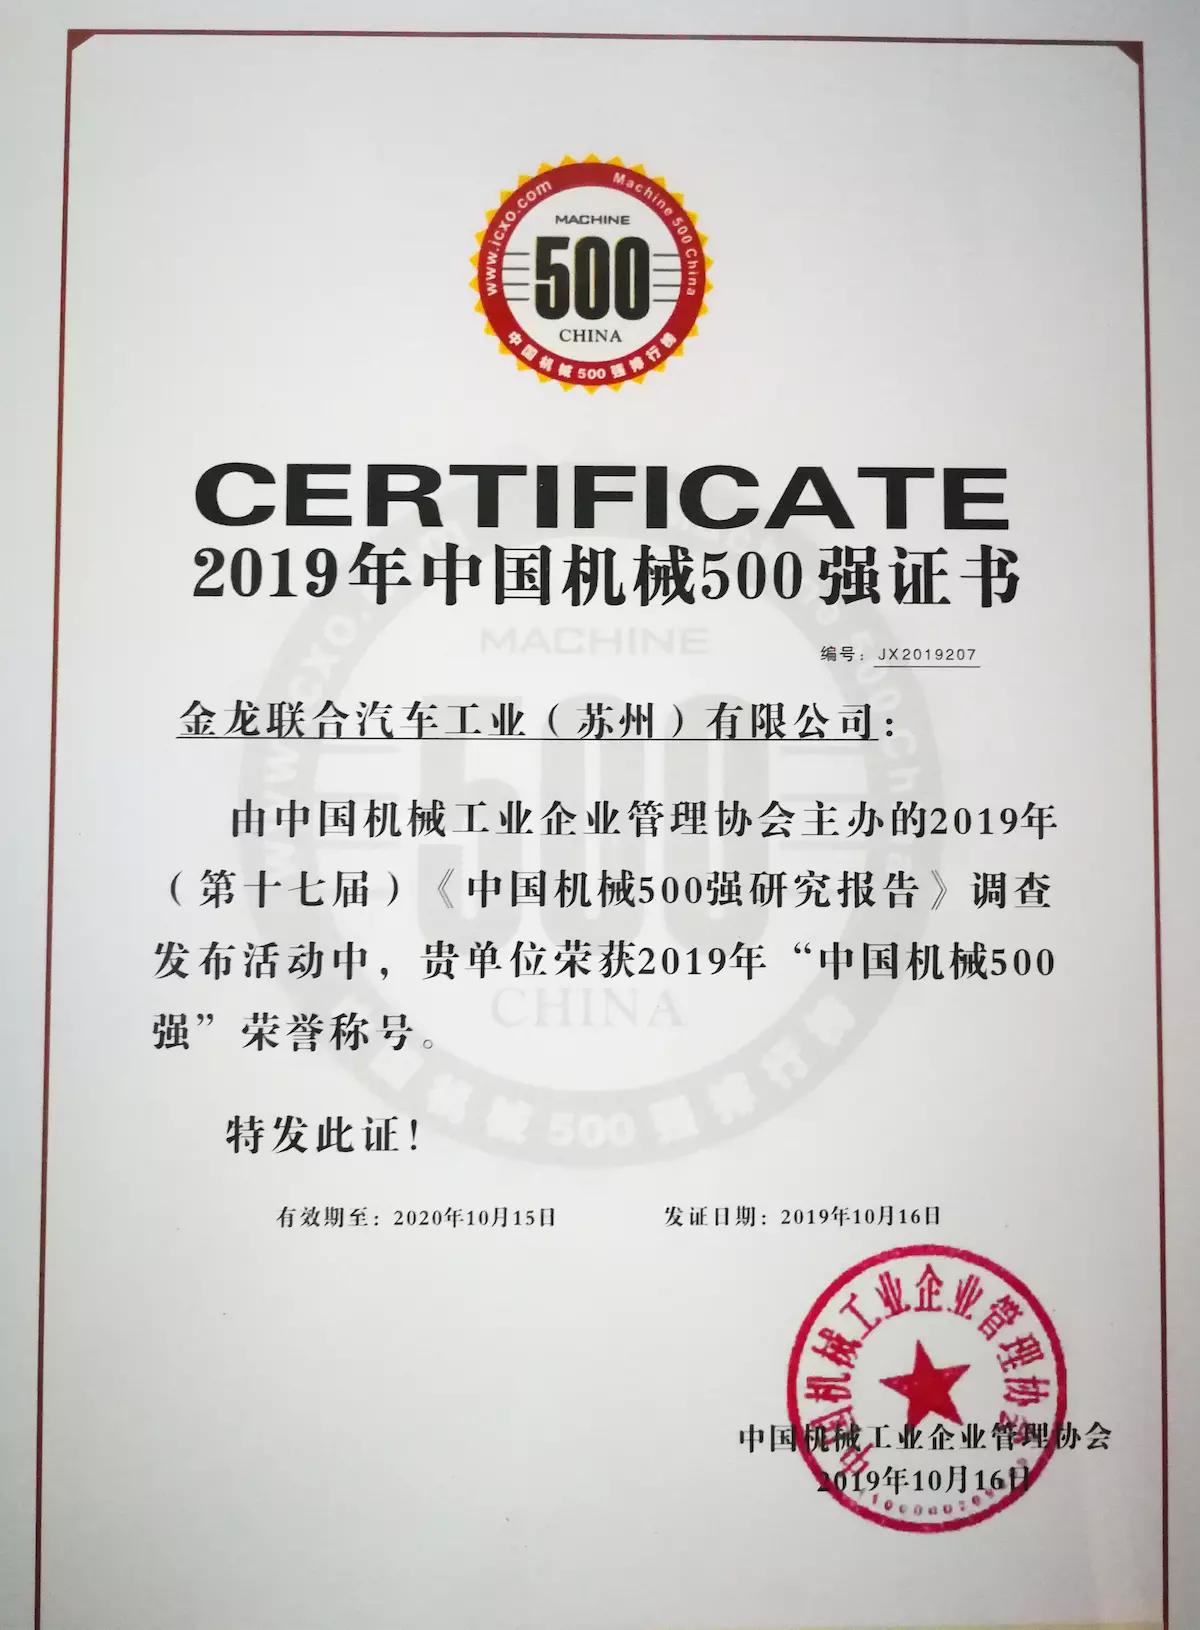 苏州金龙海格客车上榜“中国机械500强”